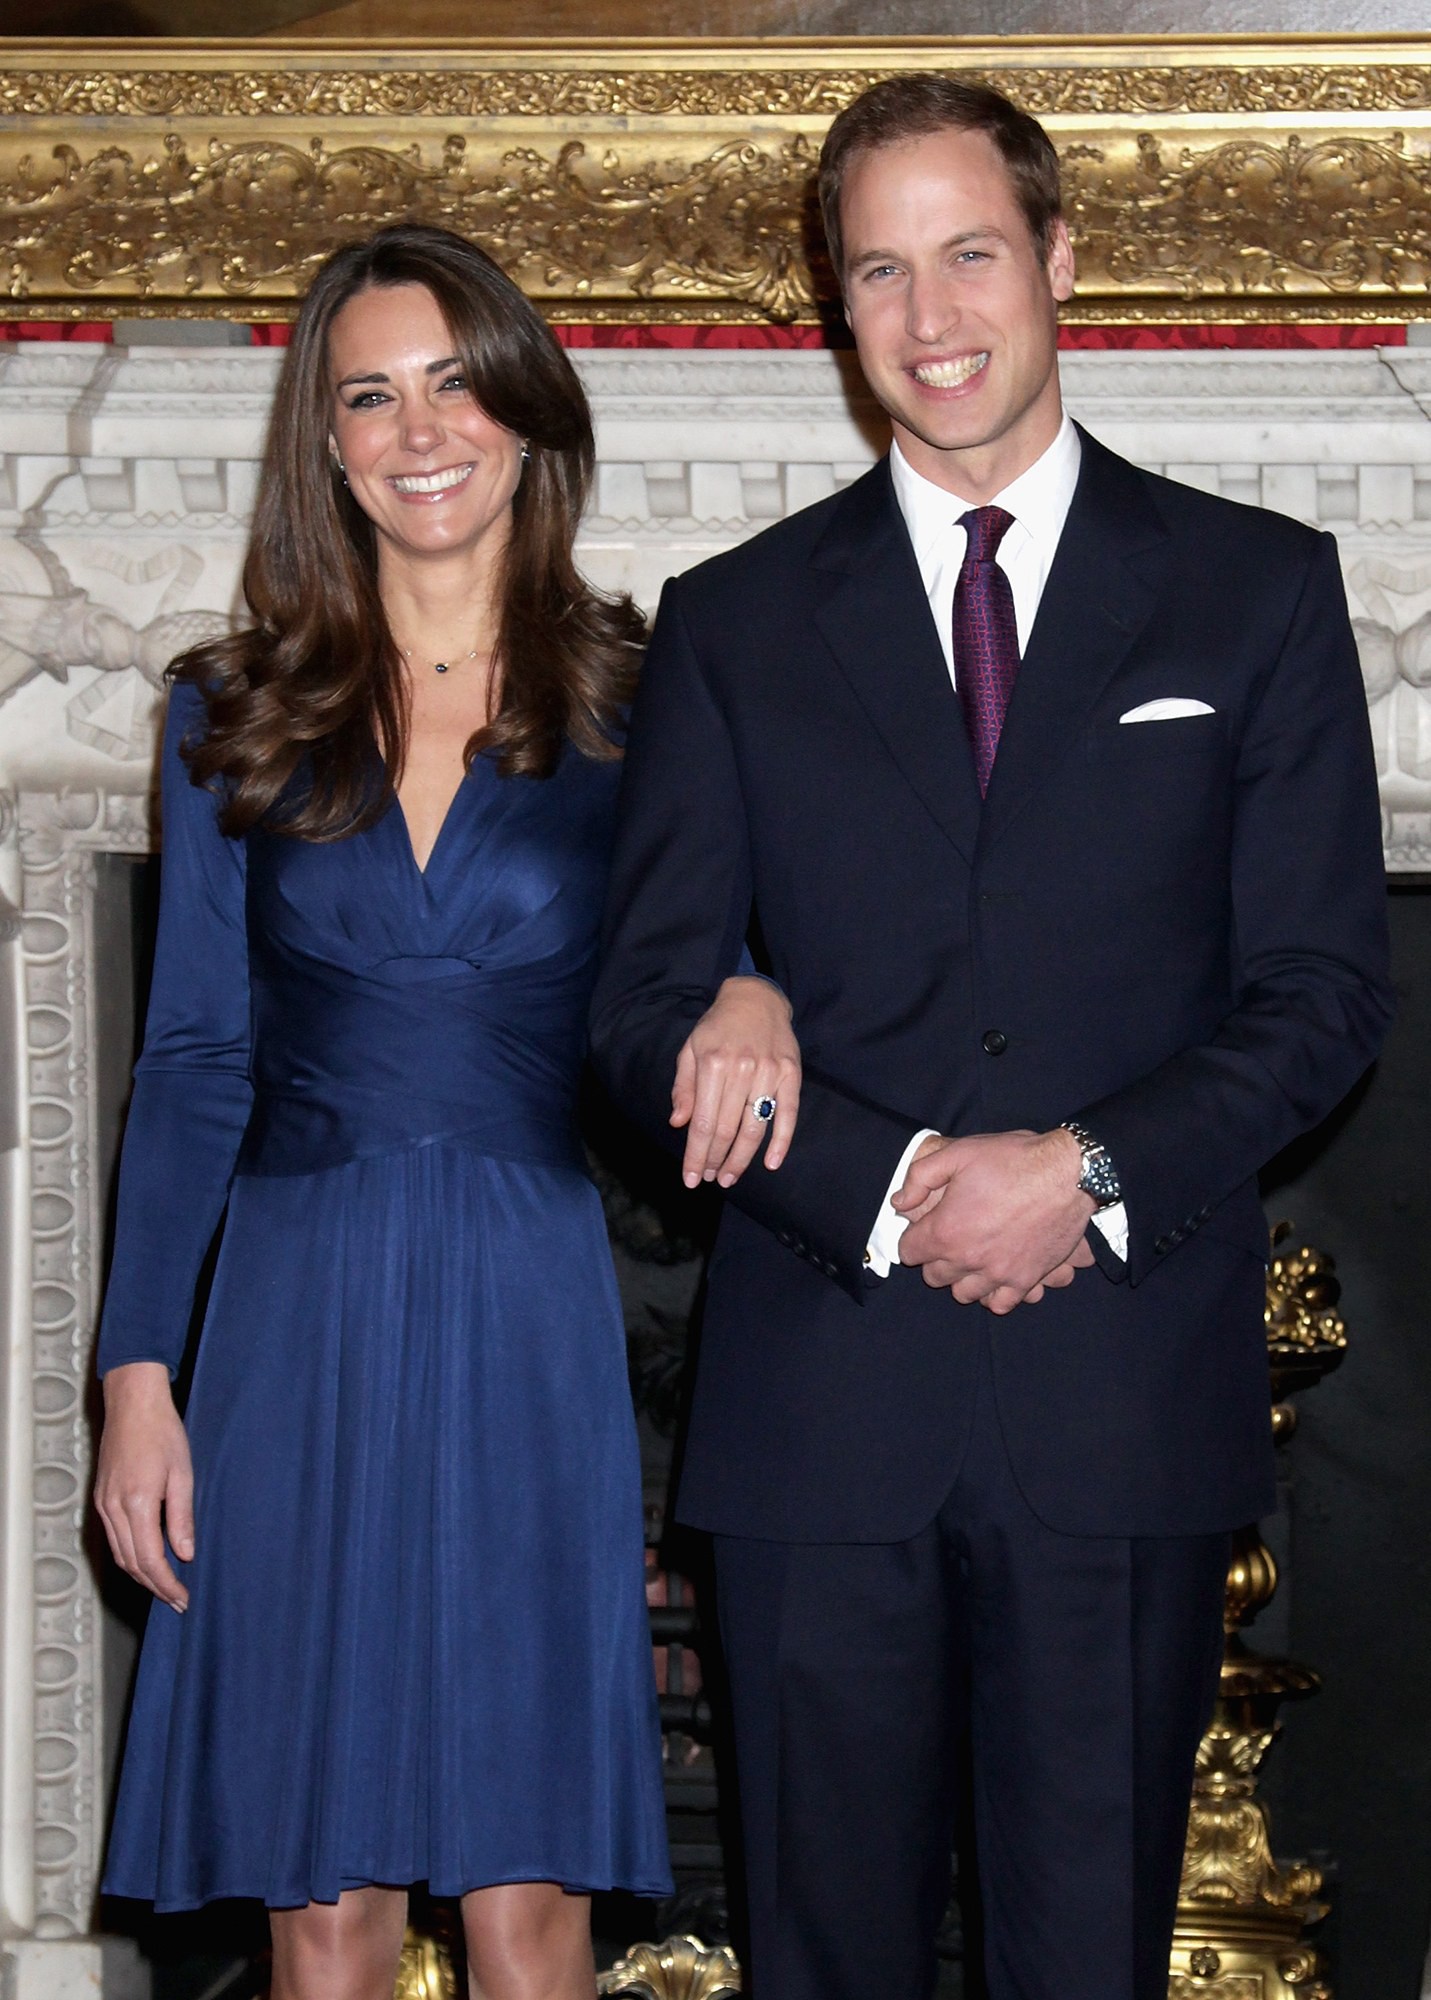 Chính bộ váy xuyên thấu táo bạo này đã phá vỡ friendzone giữa Kate Middleton và Hoàng tử William - Ảnh 1.